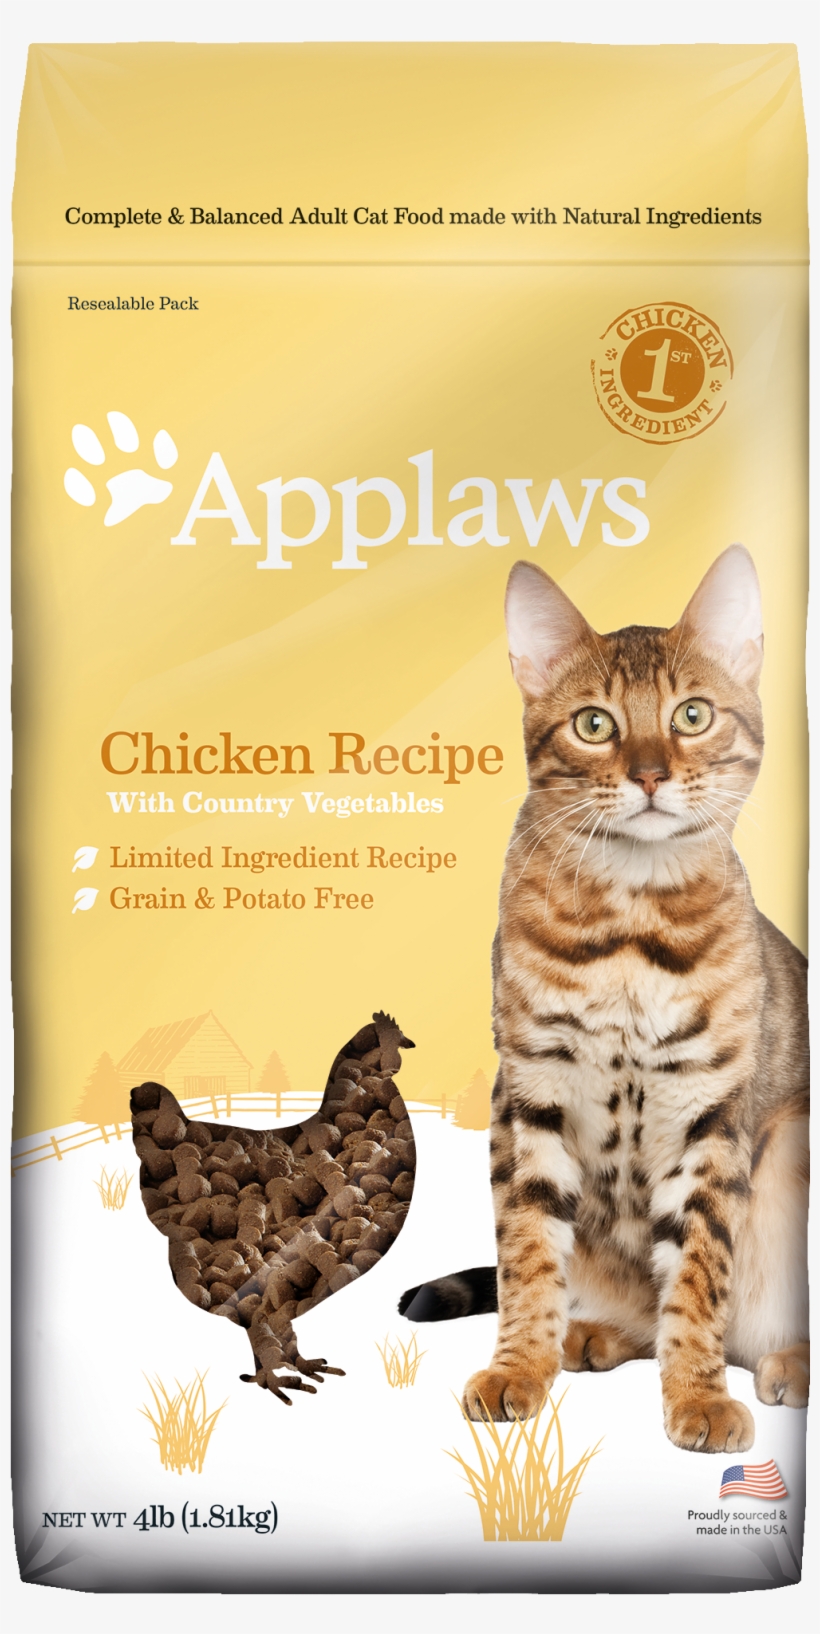 Applaws Dry Cat Food - Cat Grabs Treat, transparent png #9124639